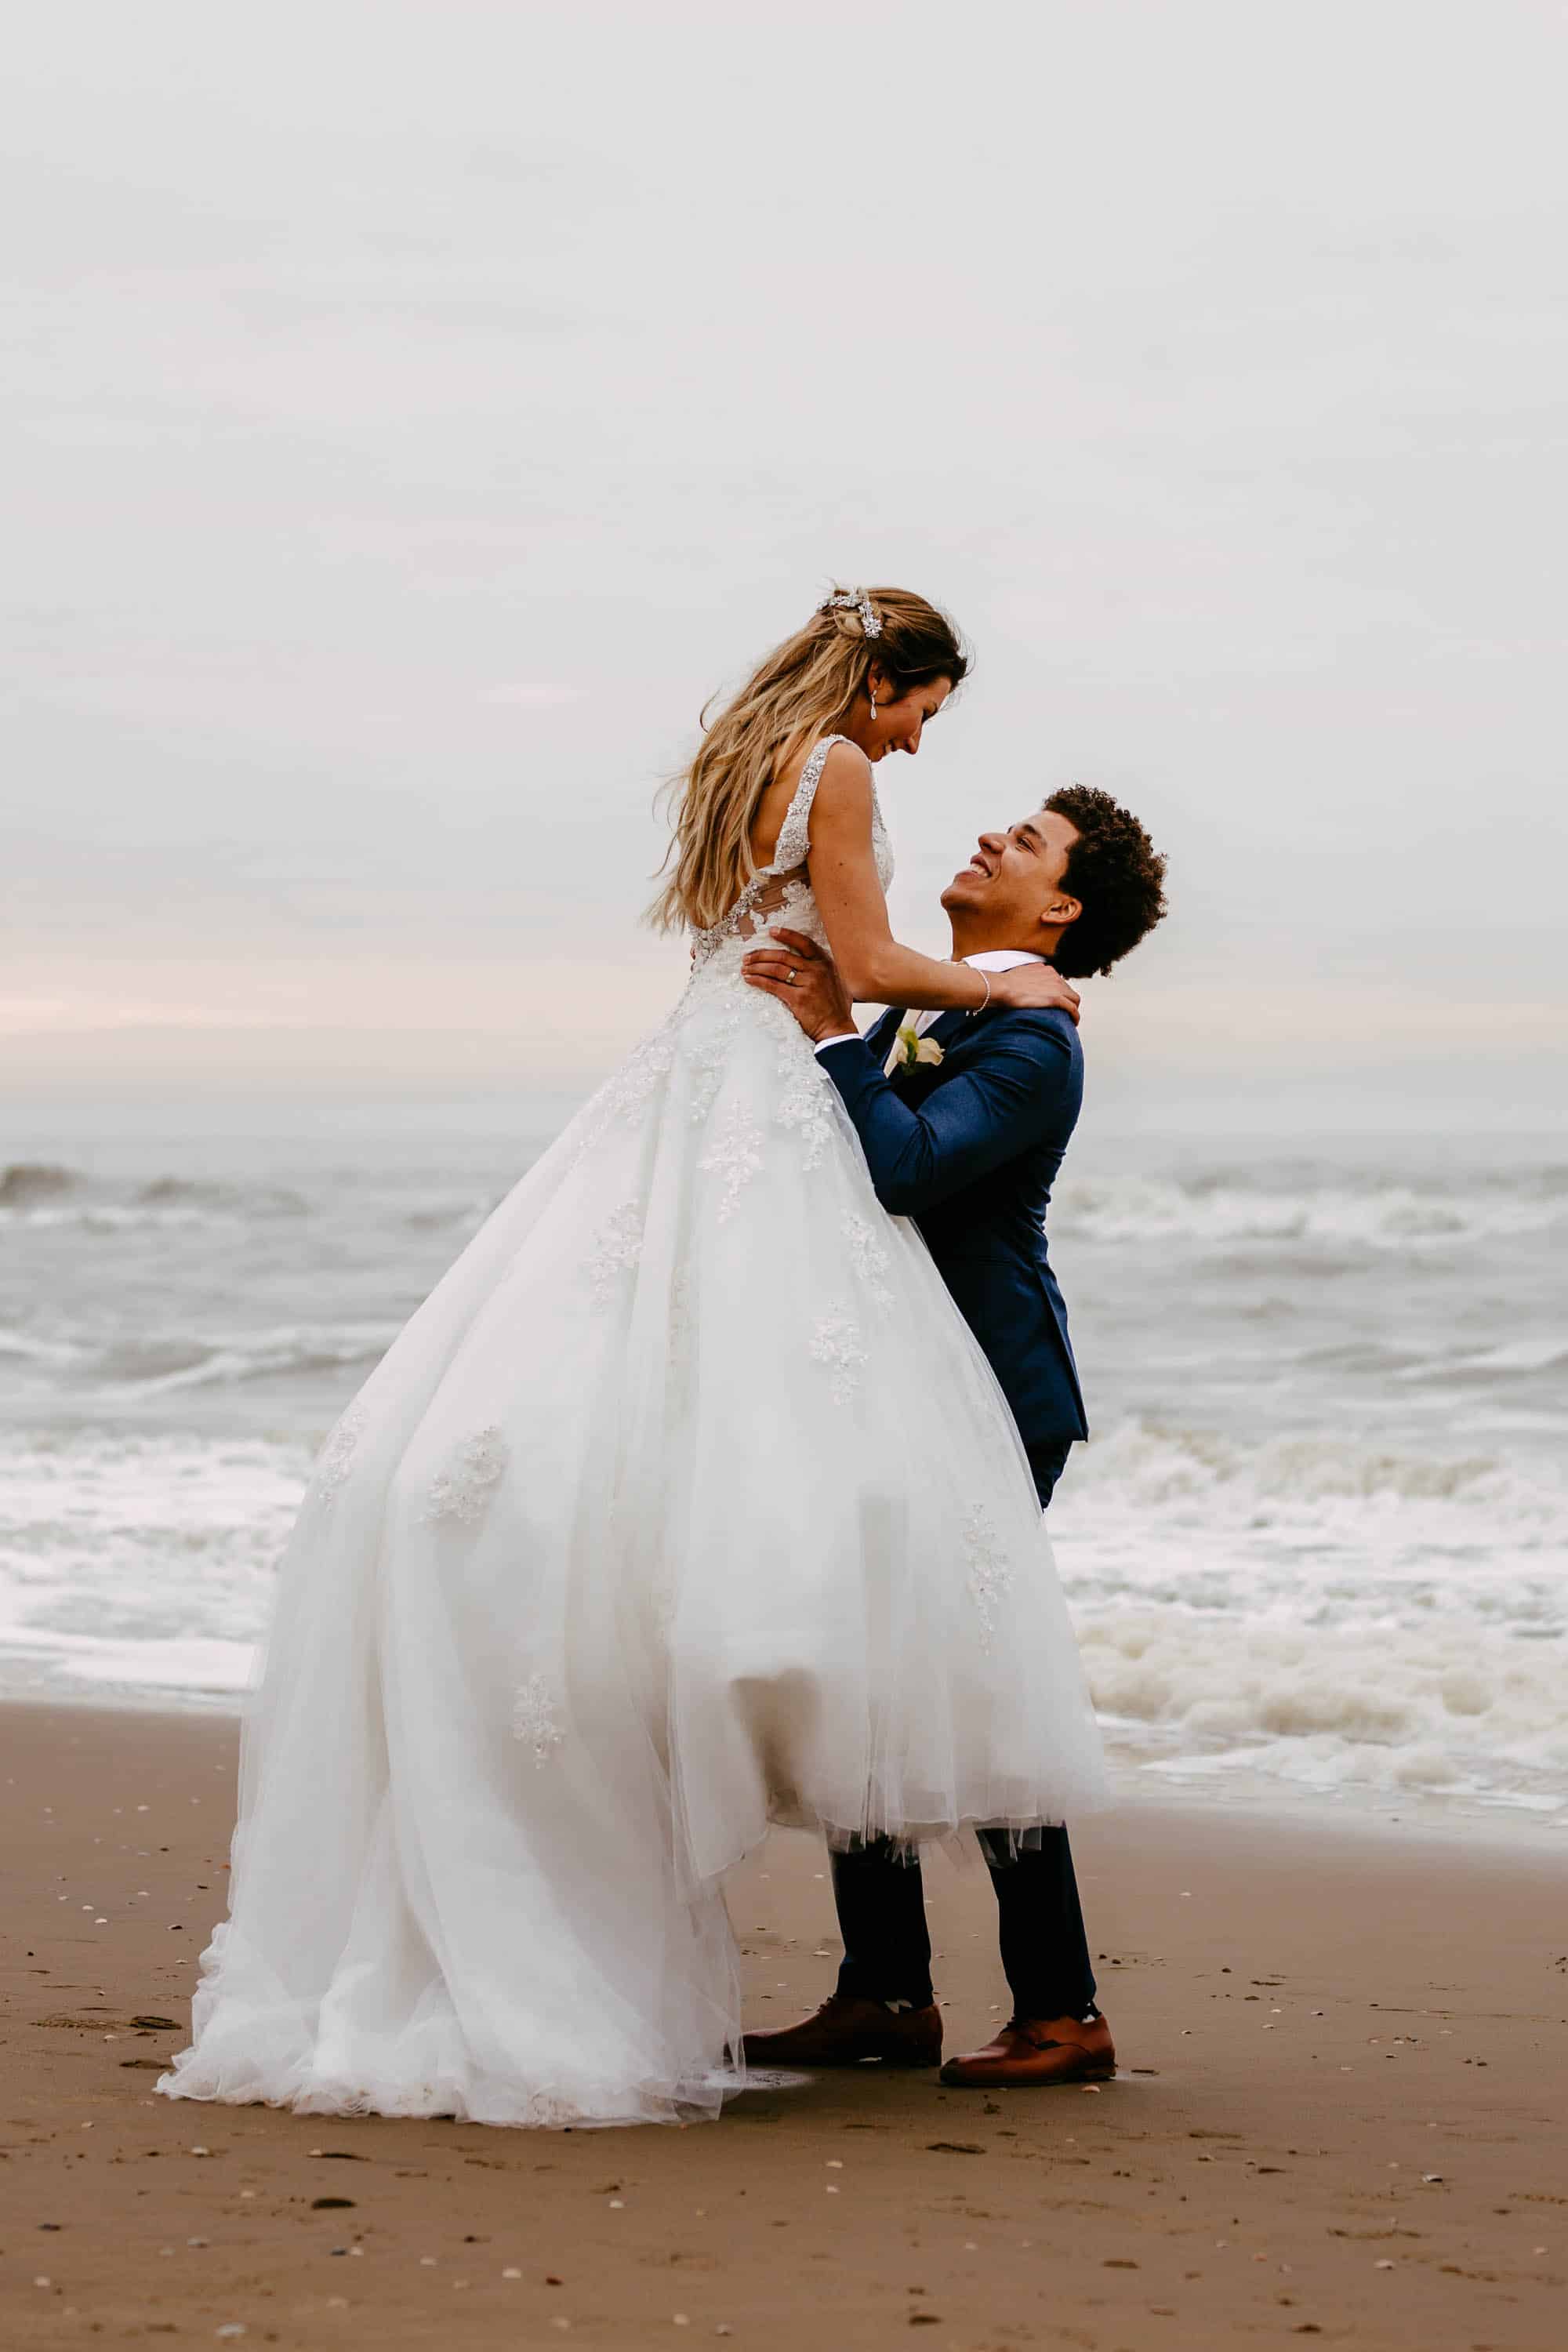 Een bruid en bruidegom knuffelen op het strand.